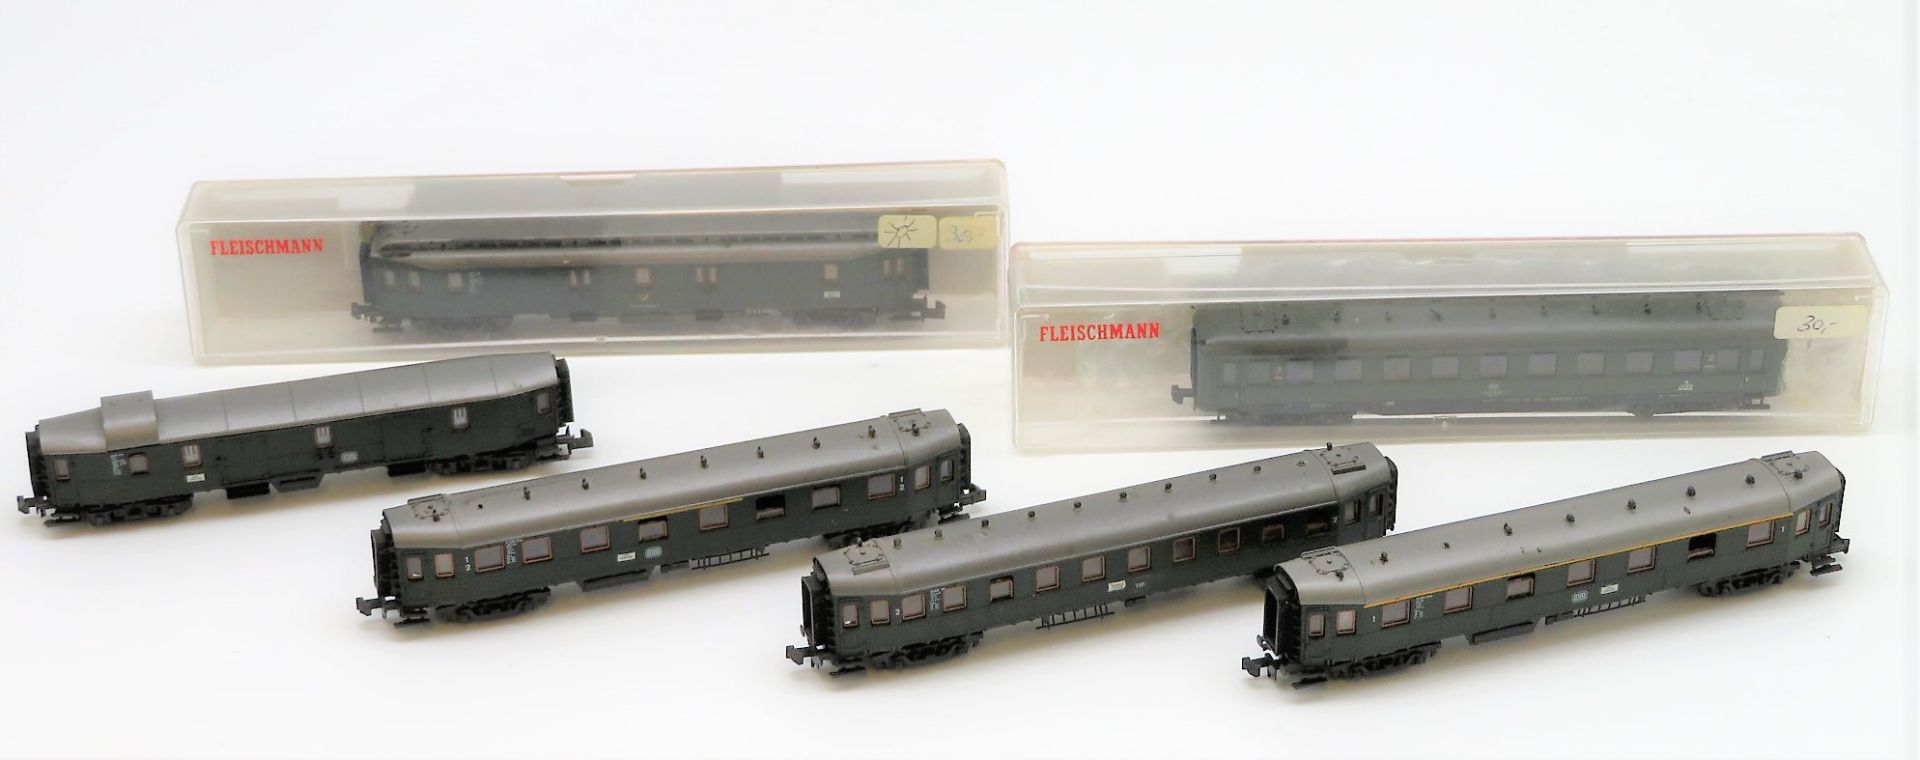 Eisenbahnkomponenten, 6 Abteil-/Gepäckwagen, wohl Fleischmann, Spur N, 8087, l 12 bis 14 cm.